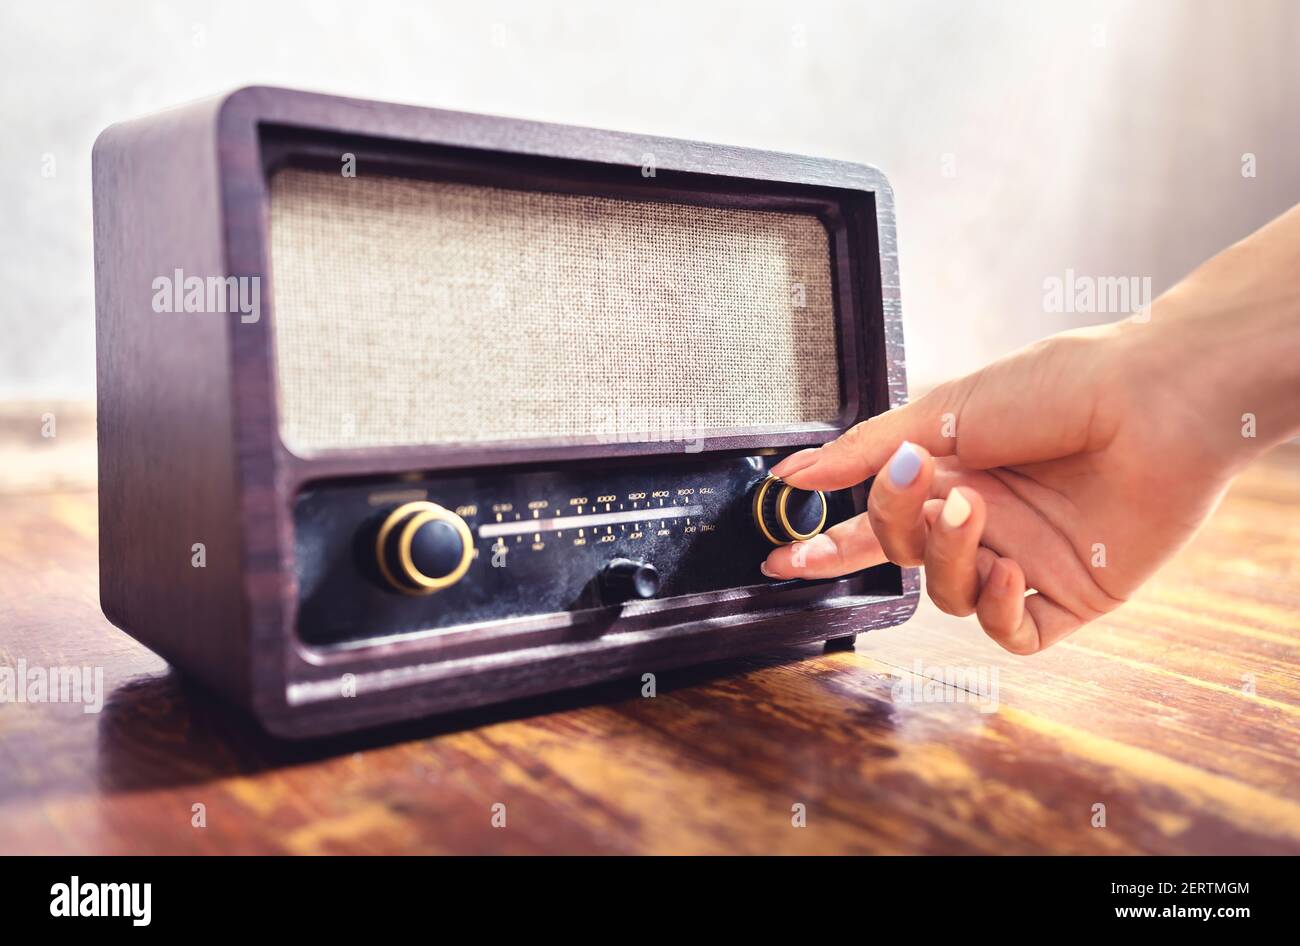 Sintonizzazione radio retrò. Donna che usa vecchie apparecchiature musicali vintage. Manopola di regolazione del volume o della frequenza. Attivazione o disattivazione del ricevitore o dell'altoparlante stereo. Foto Stock